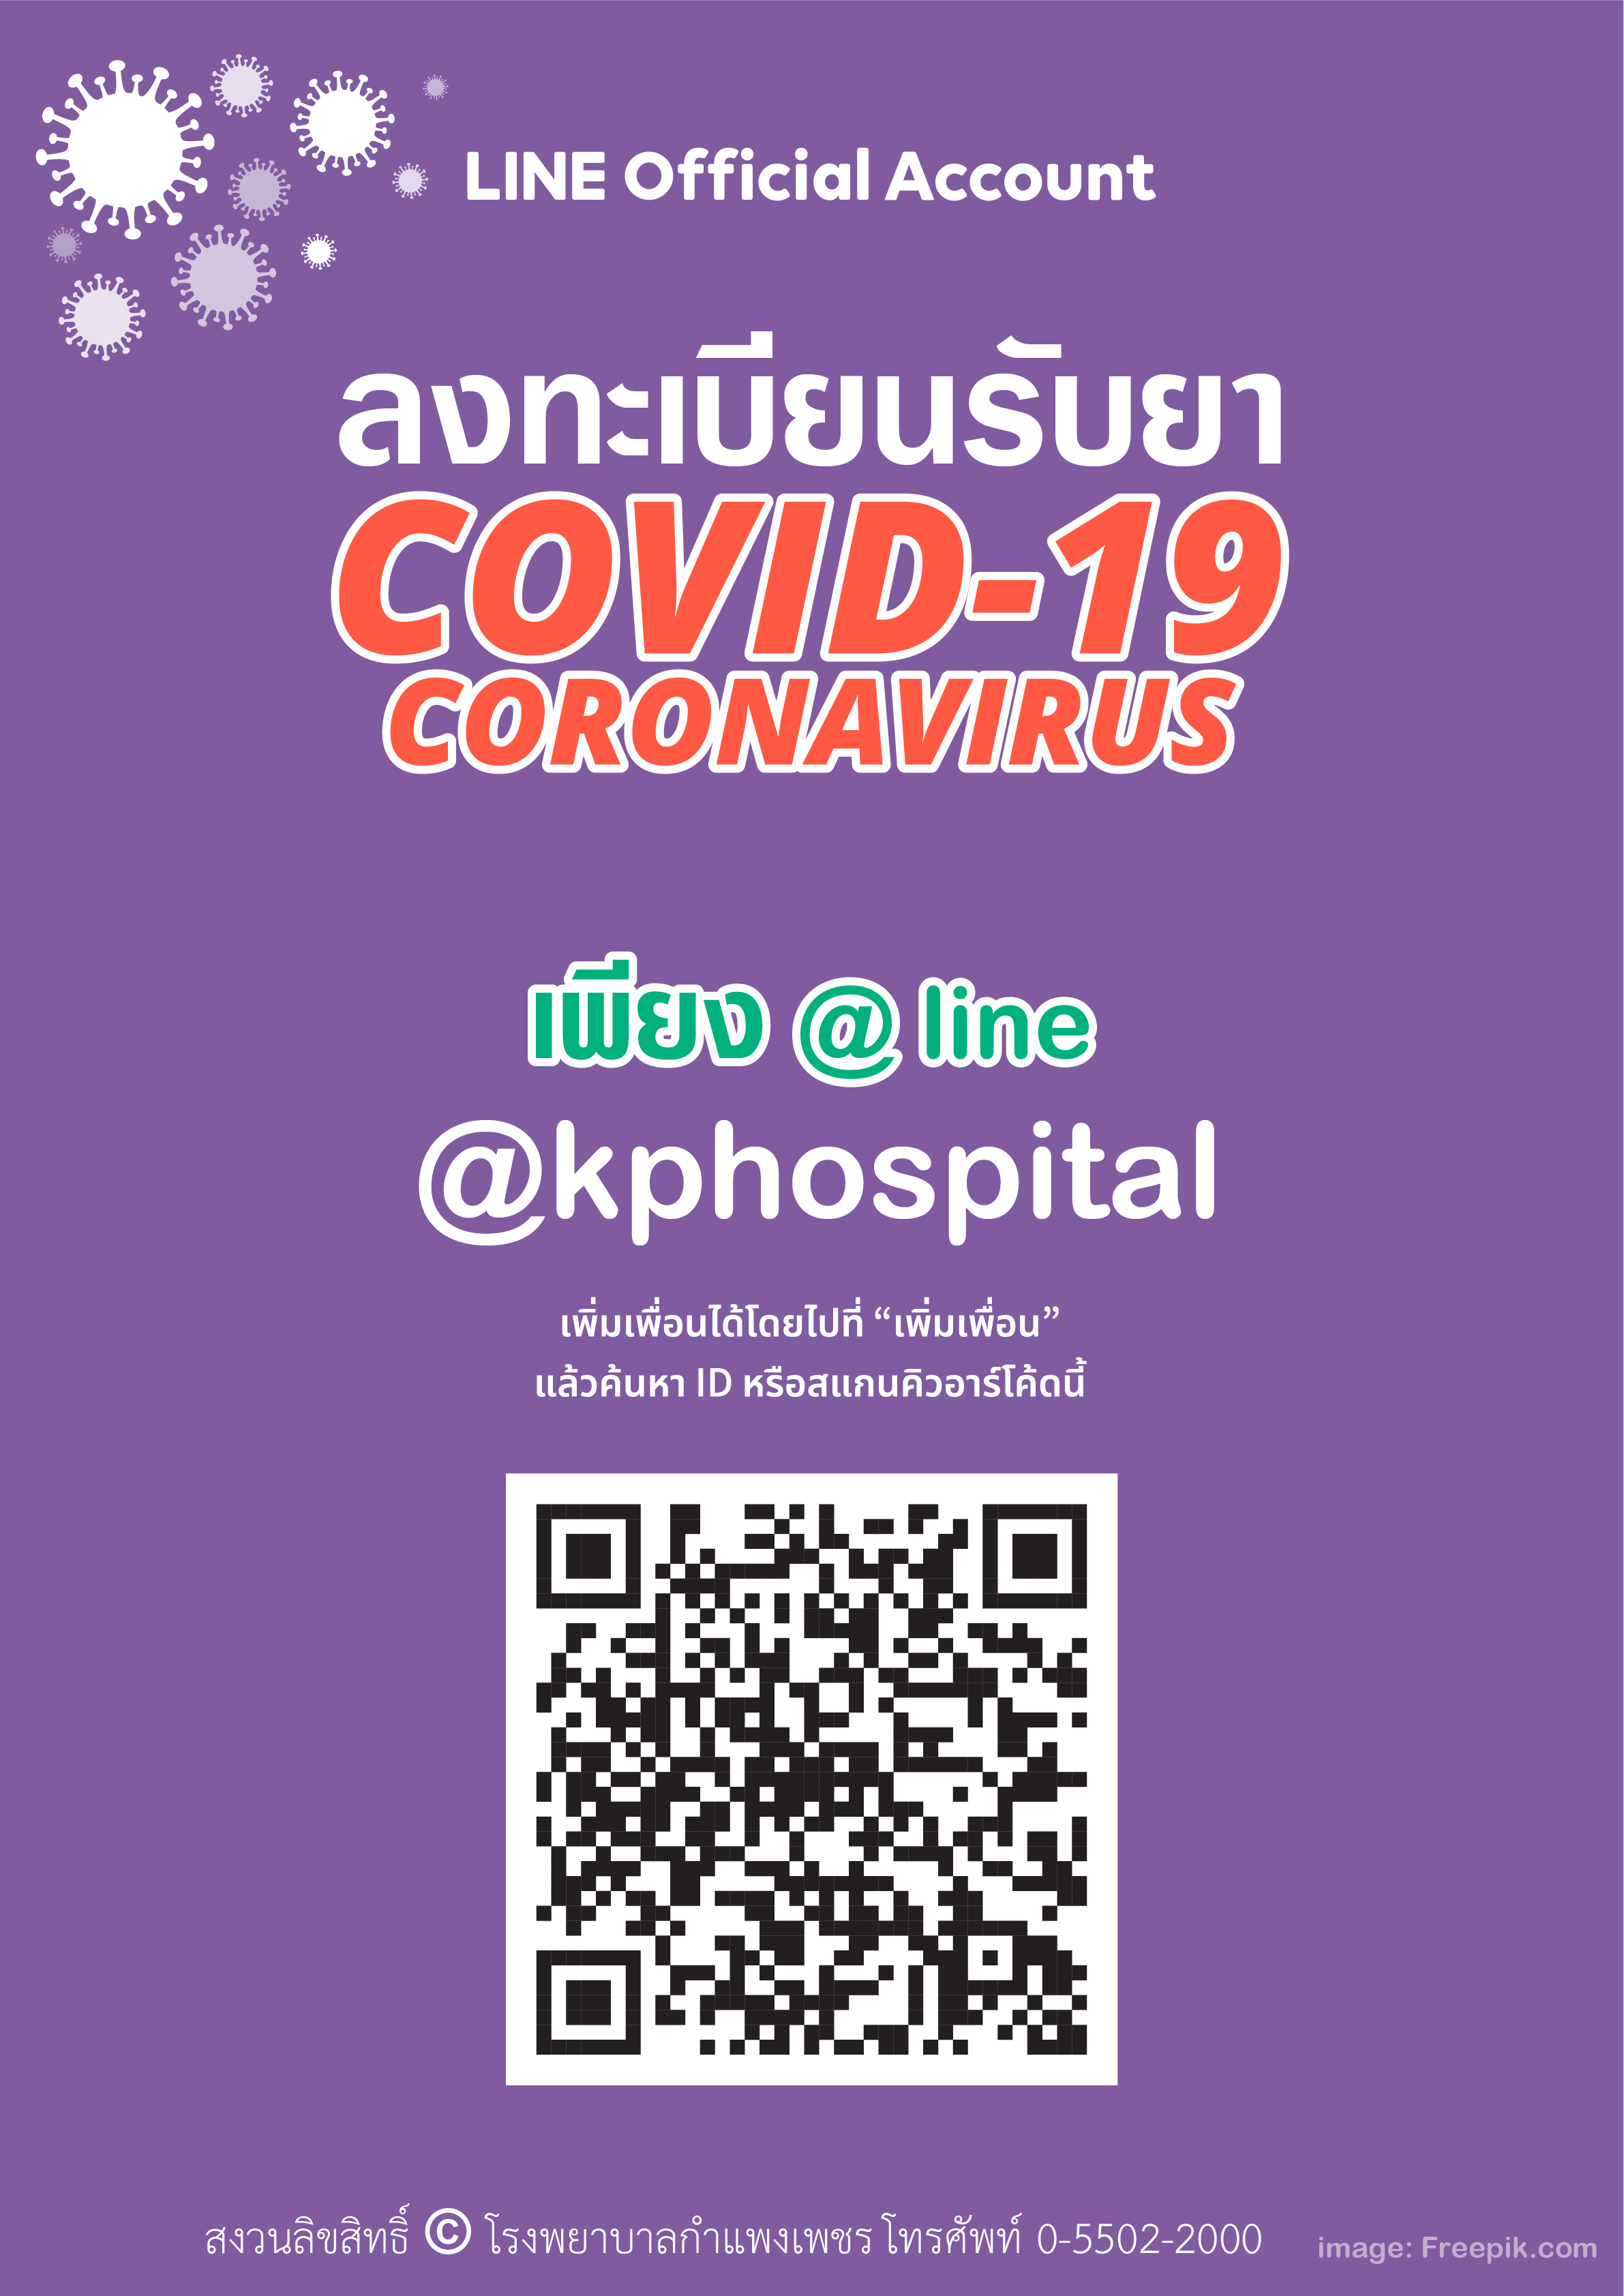 Line @kphospital